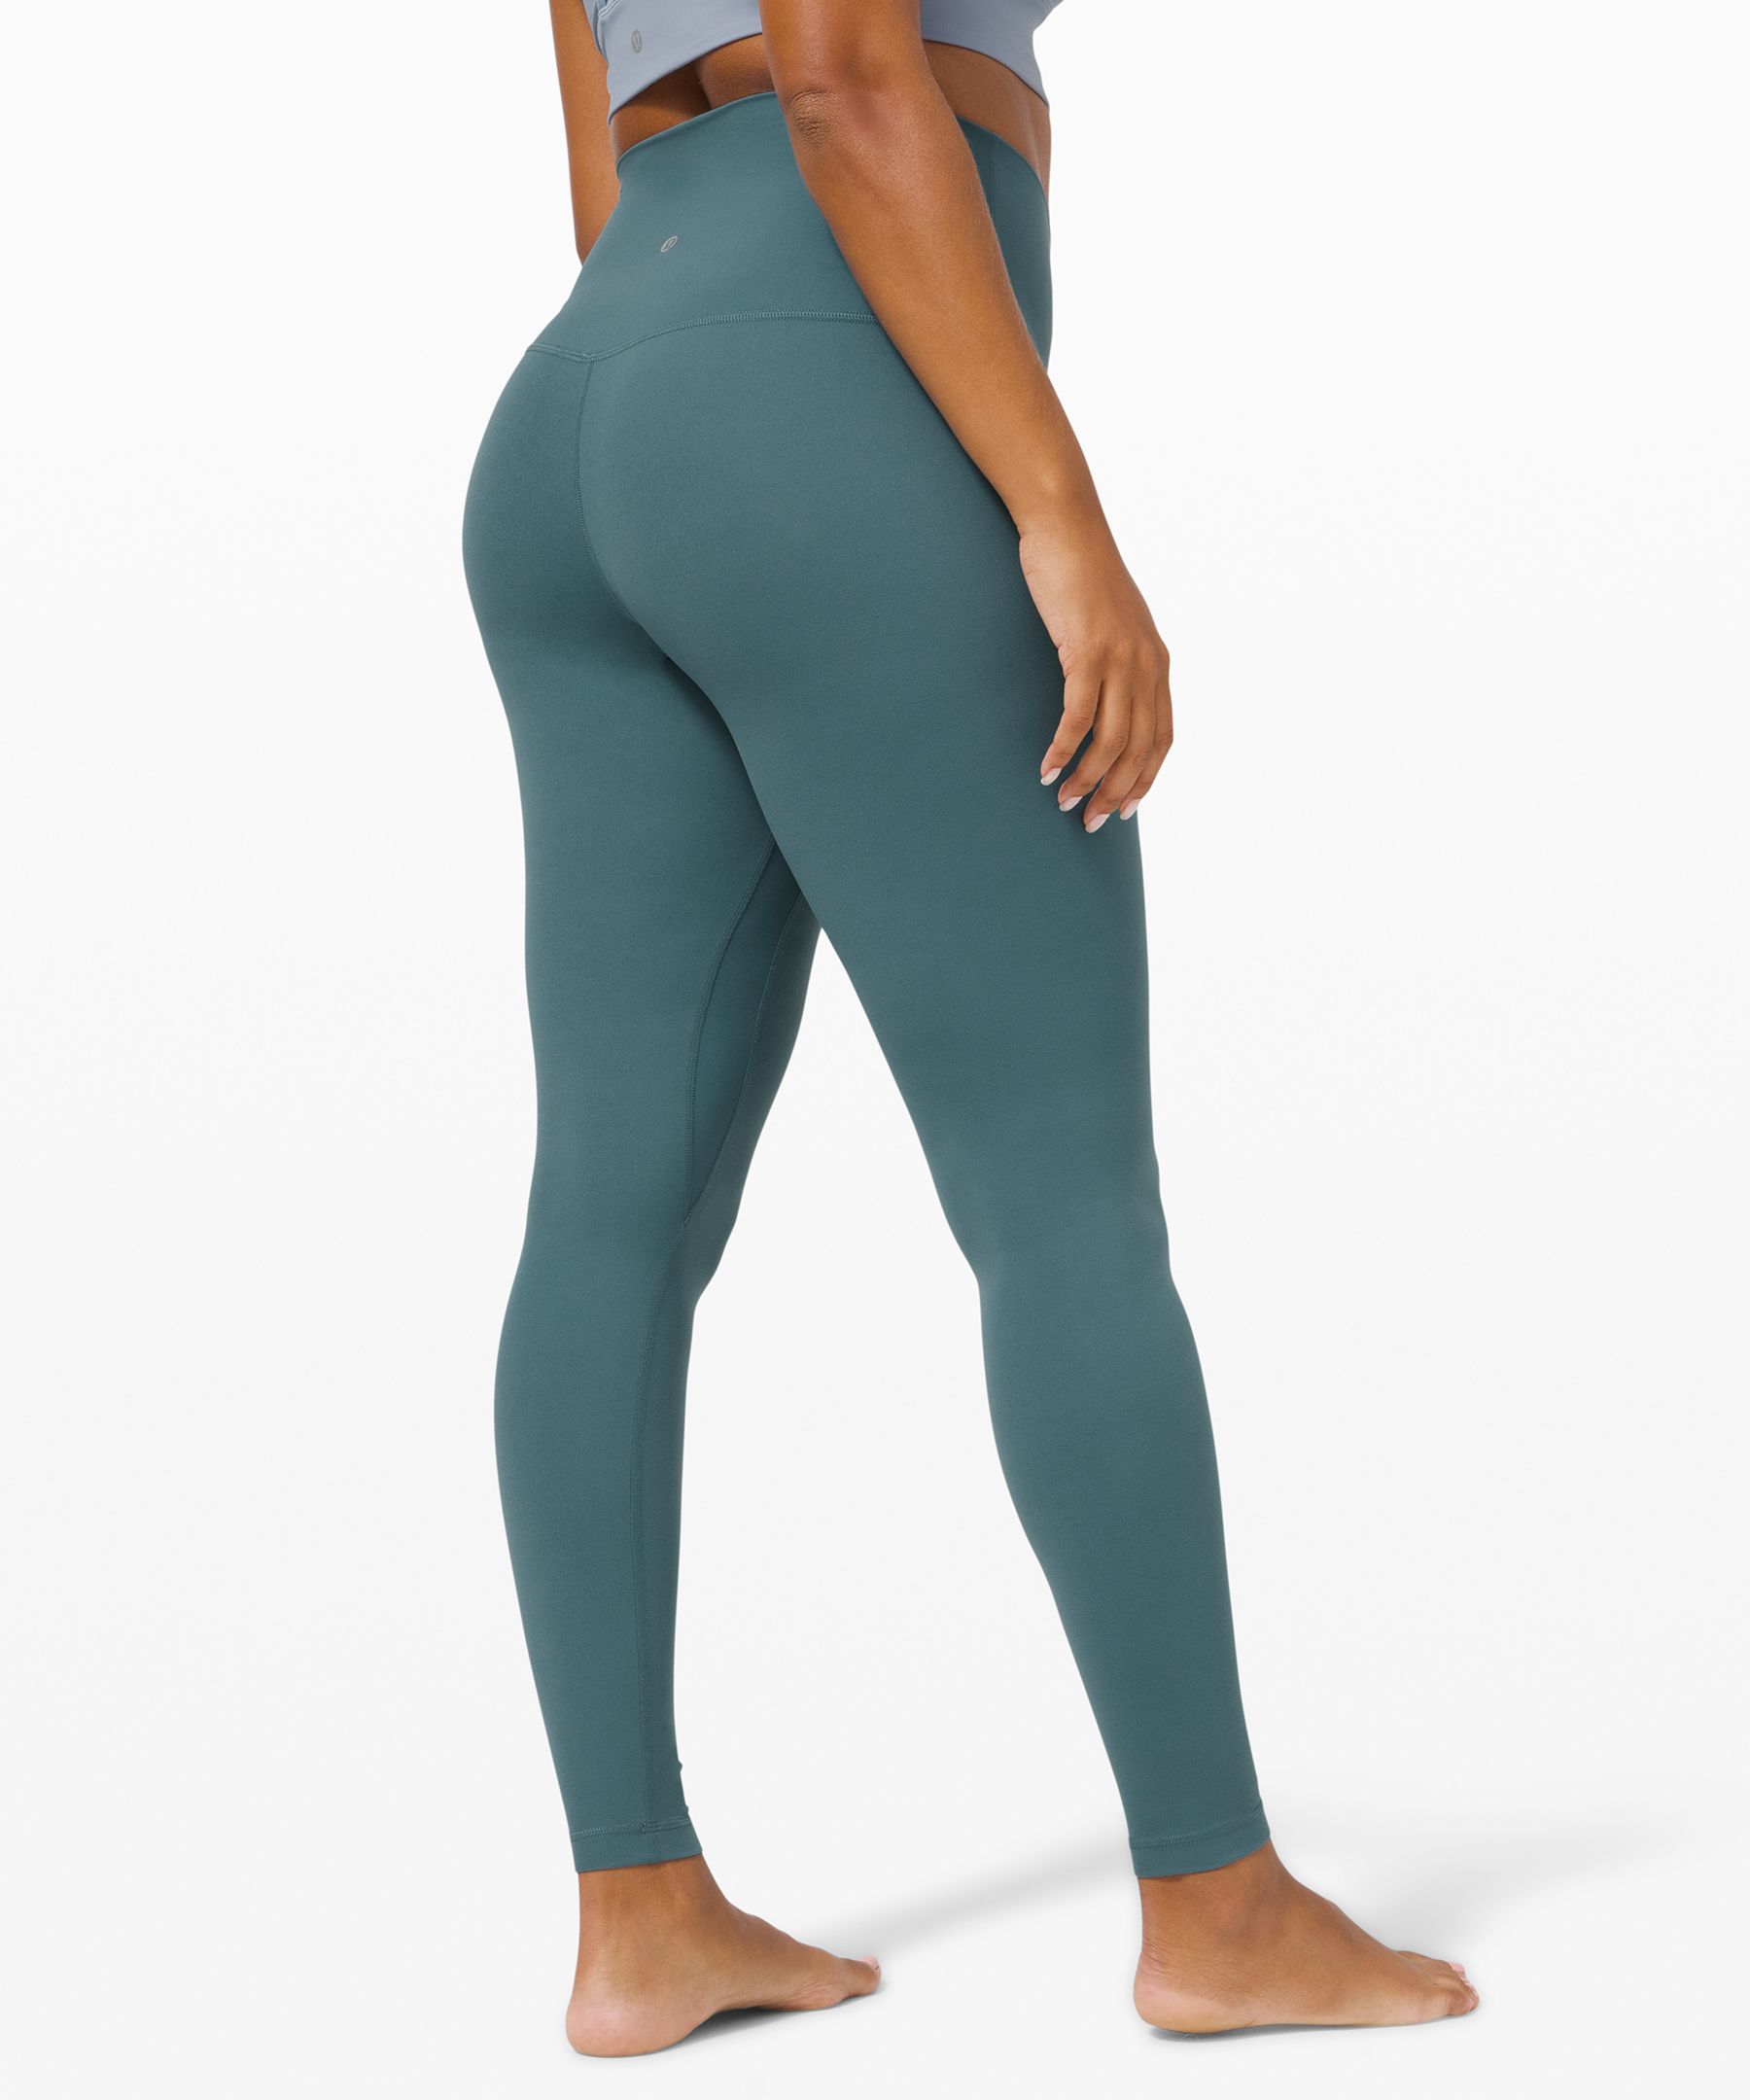 Lululemon align leggings 28” Chrome color Size 6  Lululemon align leggings,  Lululemon align, Chrome colour